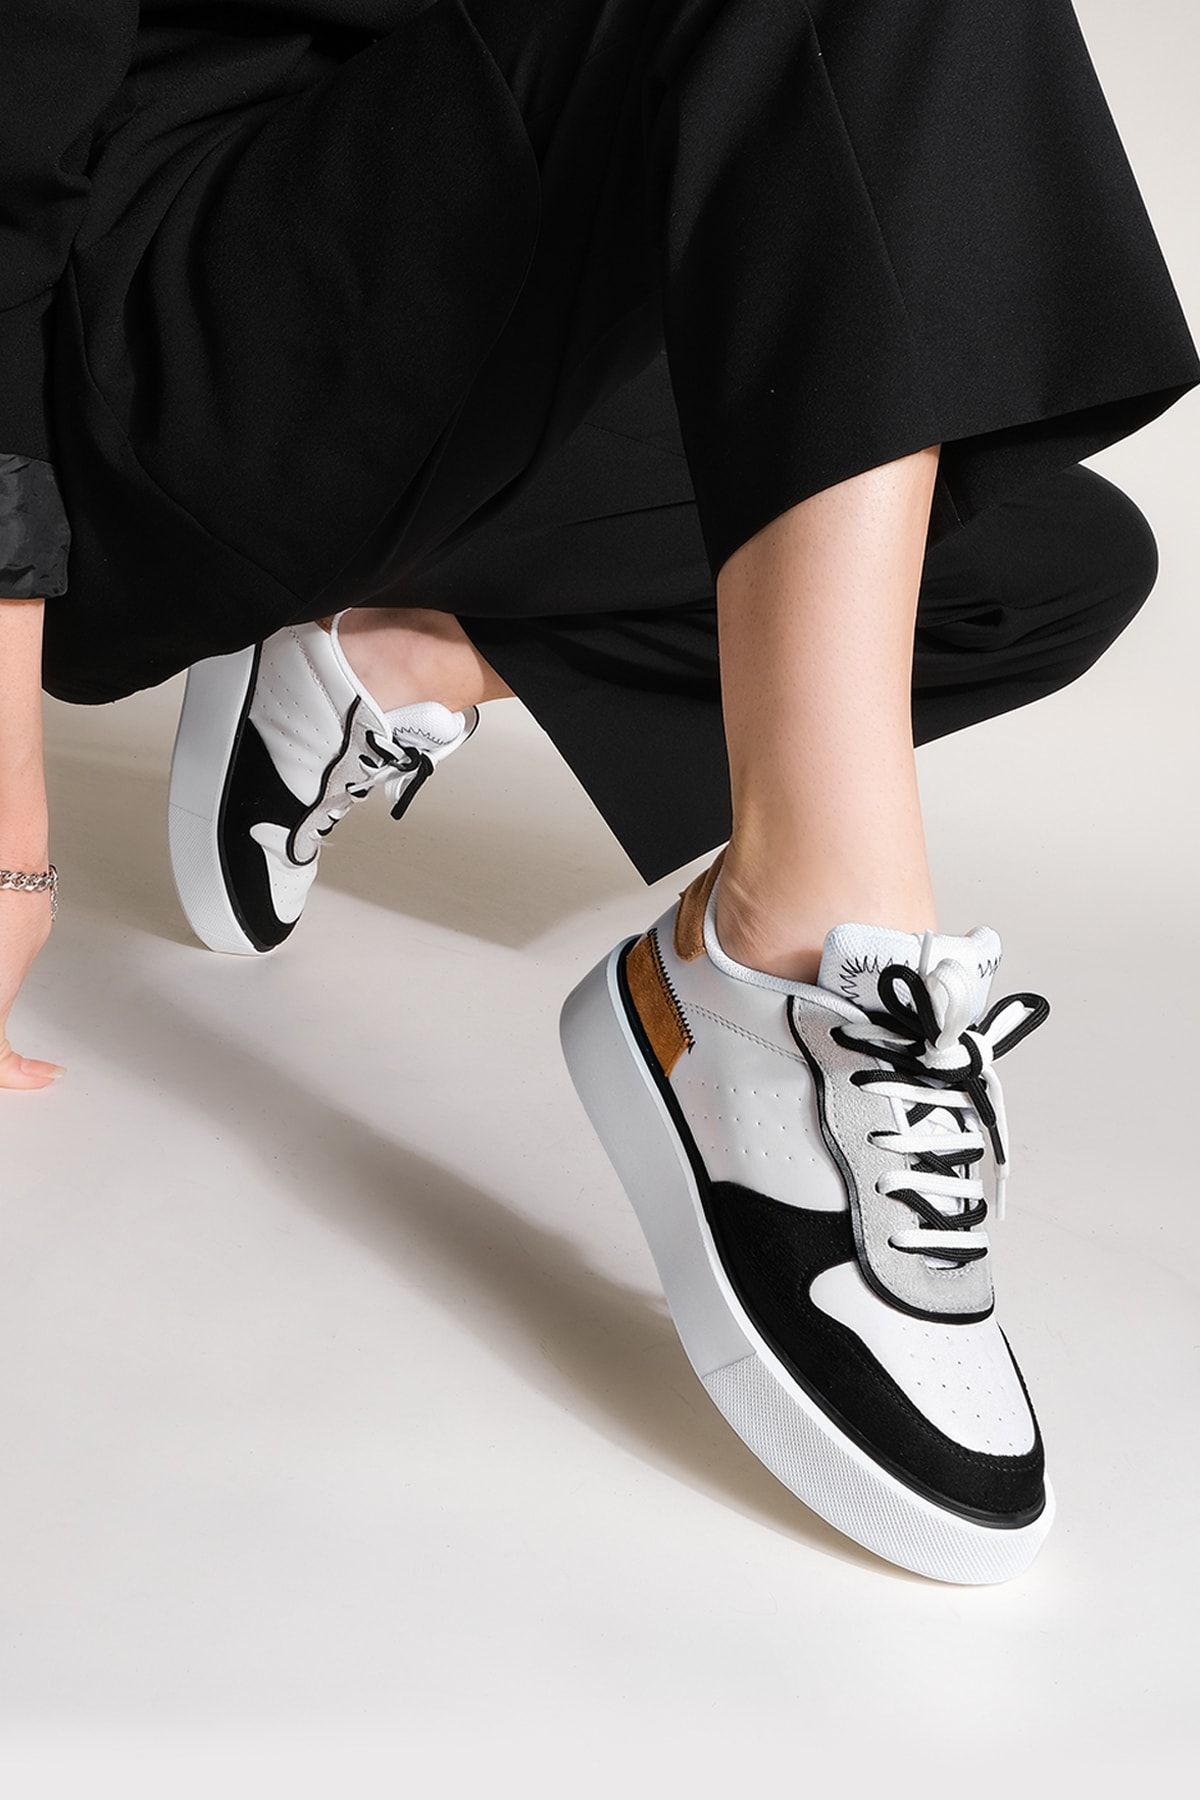 Marjin Kadın Sneaker Yüksek Taban Blok Renk Bağcıklı Spor Ayakkabı Pera beyaz